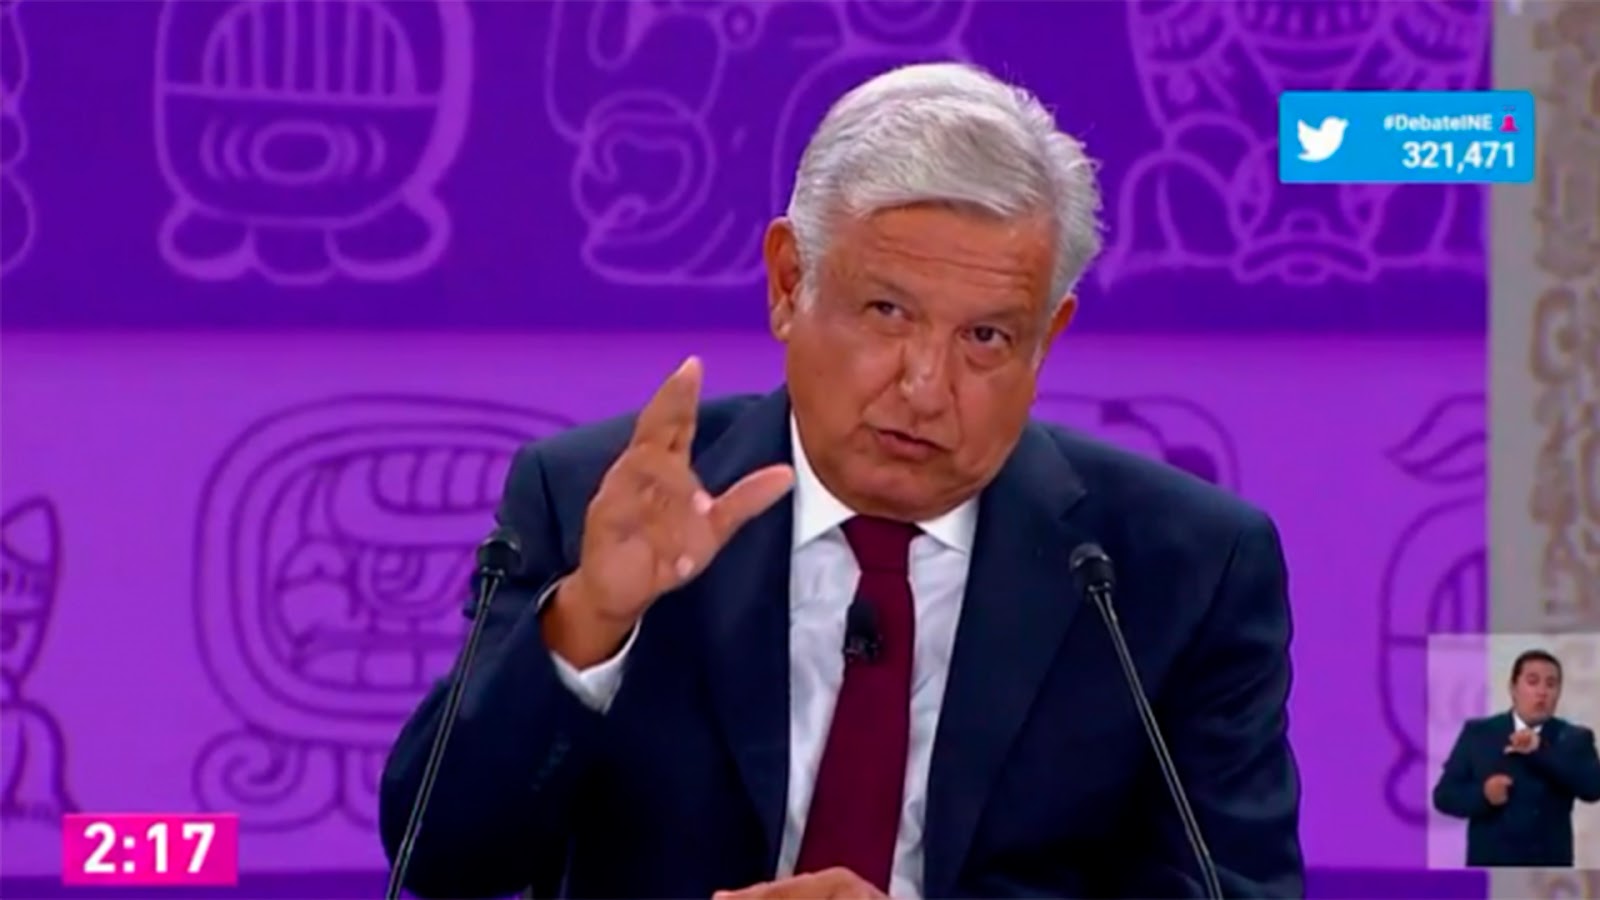 Usuarios dan el triunfo a López Obrador del tercer debate electoral (VIDEO)